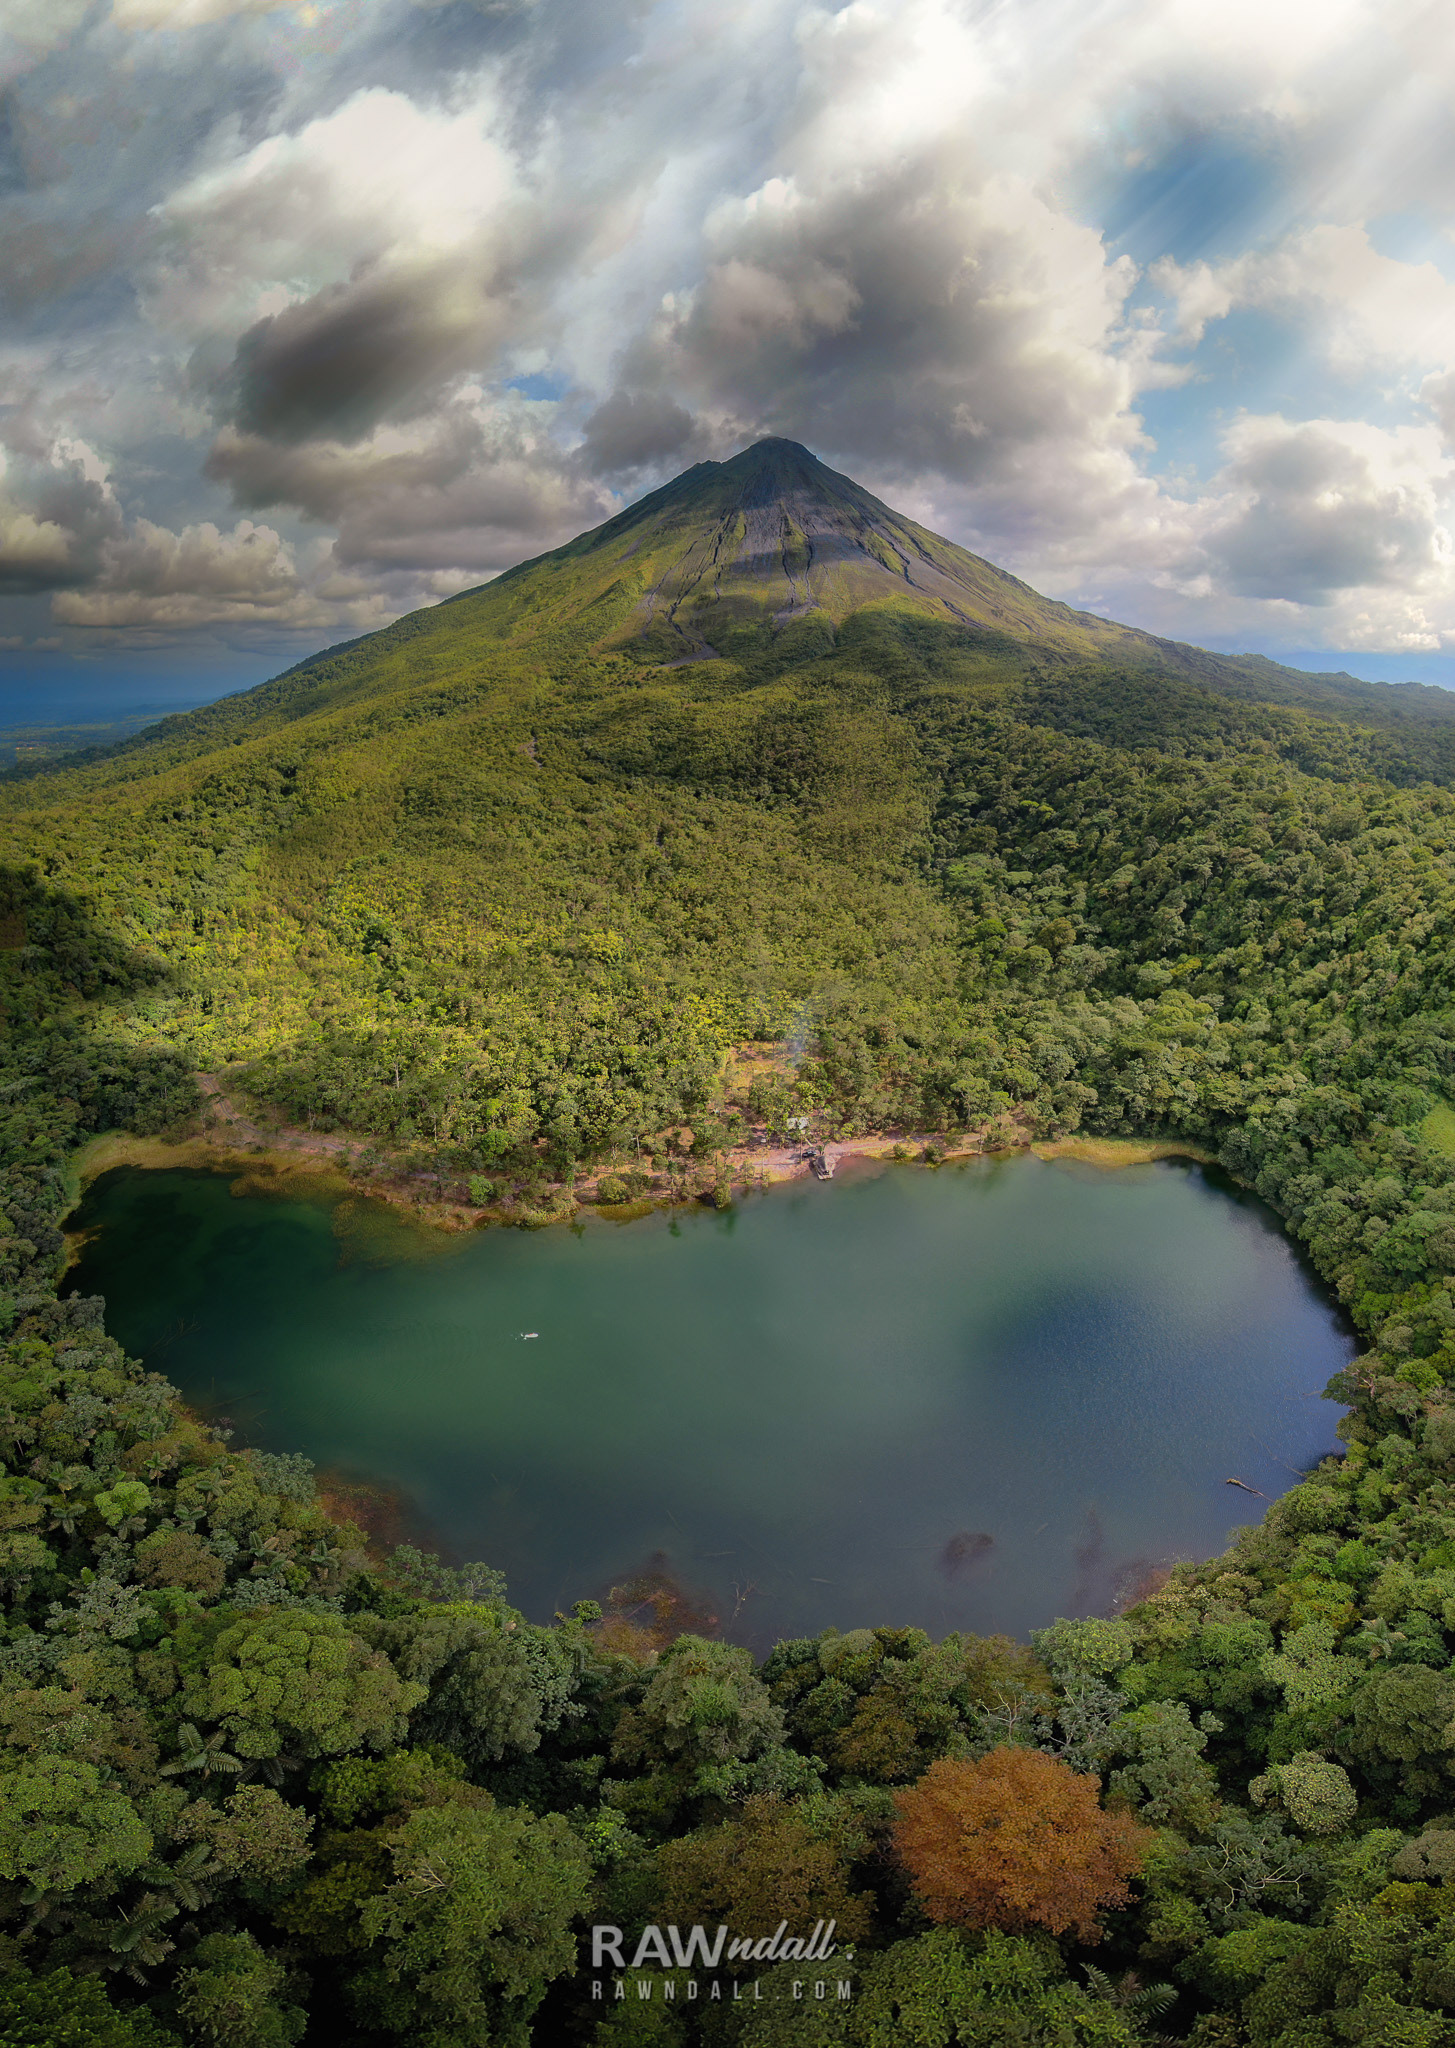 Pasiasje de una lago y un volcan en la Fortuna, Costa Rica.